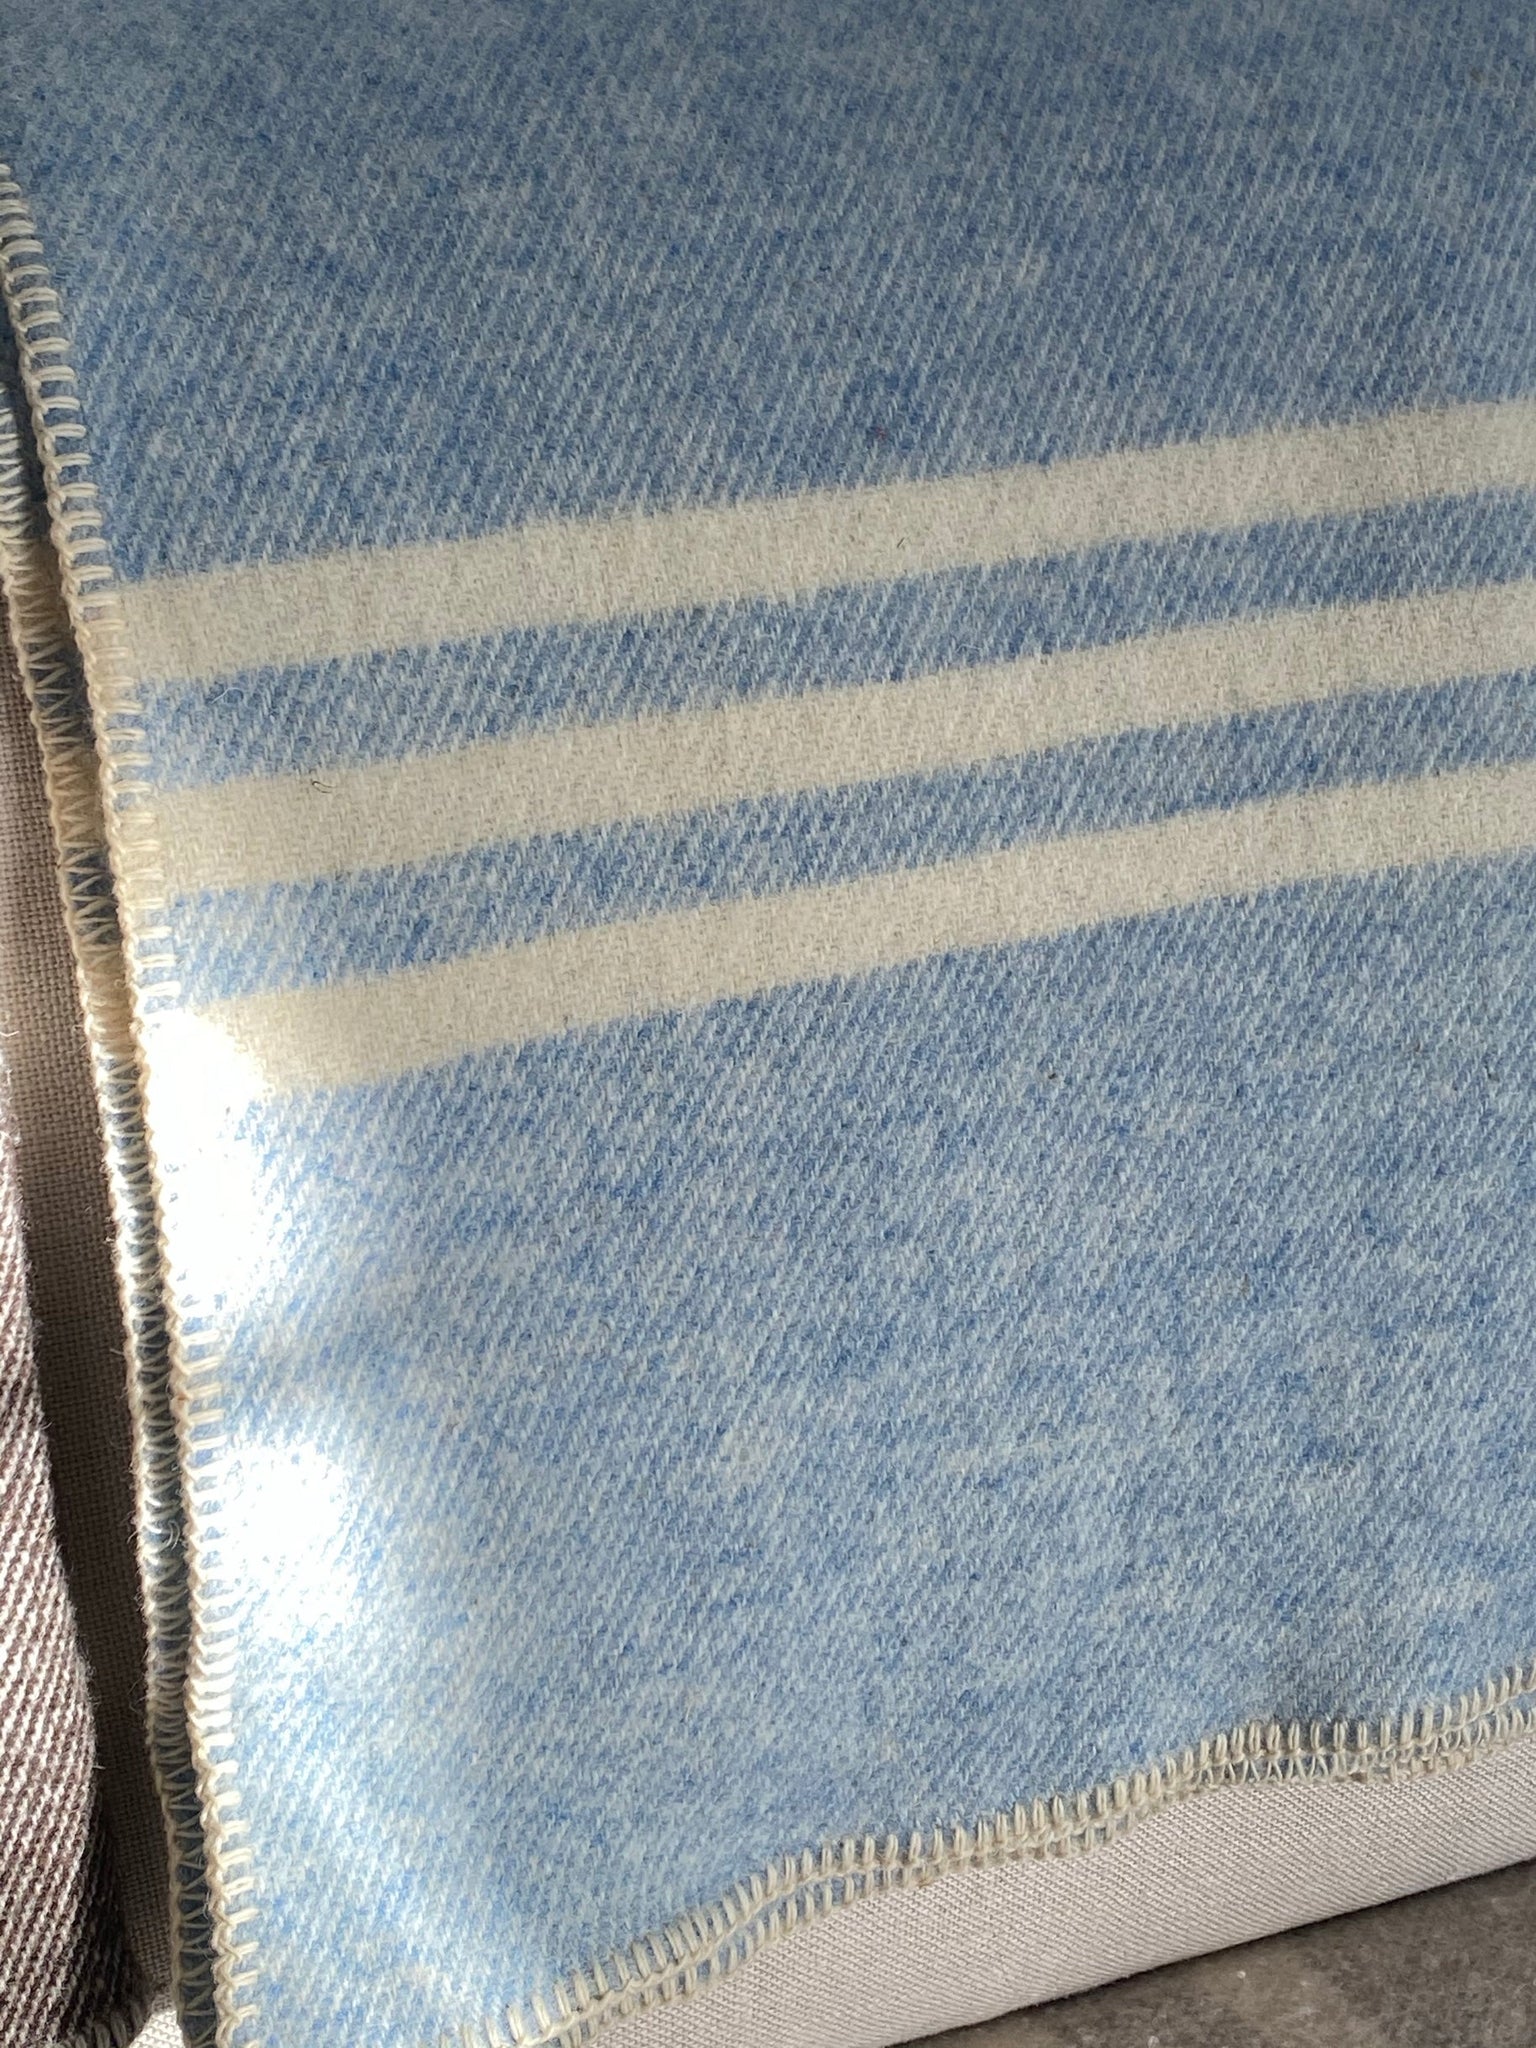 MacAusland's Lap Blanket - Sky Blue Tweed